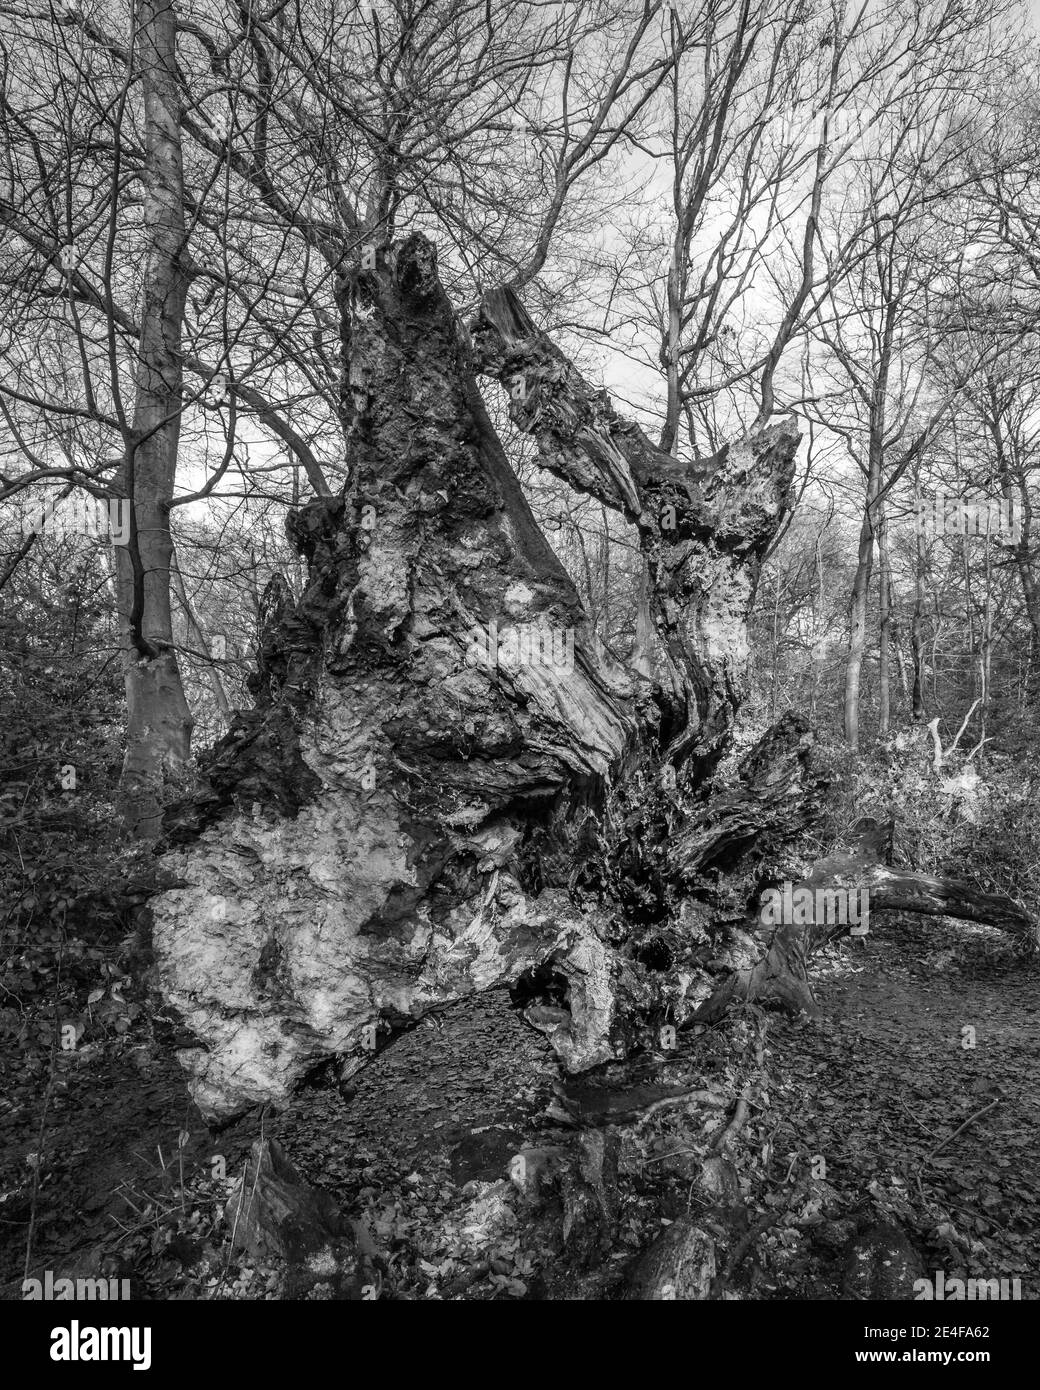 Fallen tree in Hampstead, London Stock Photo